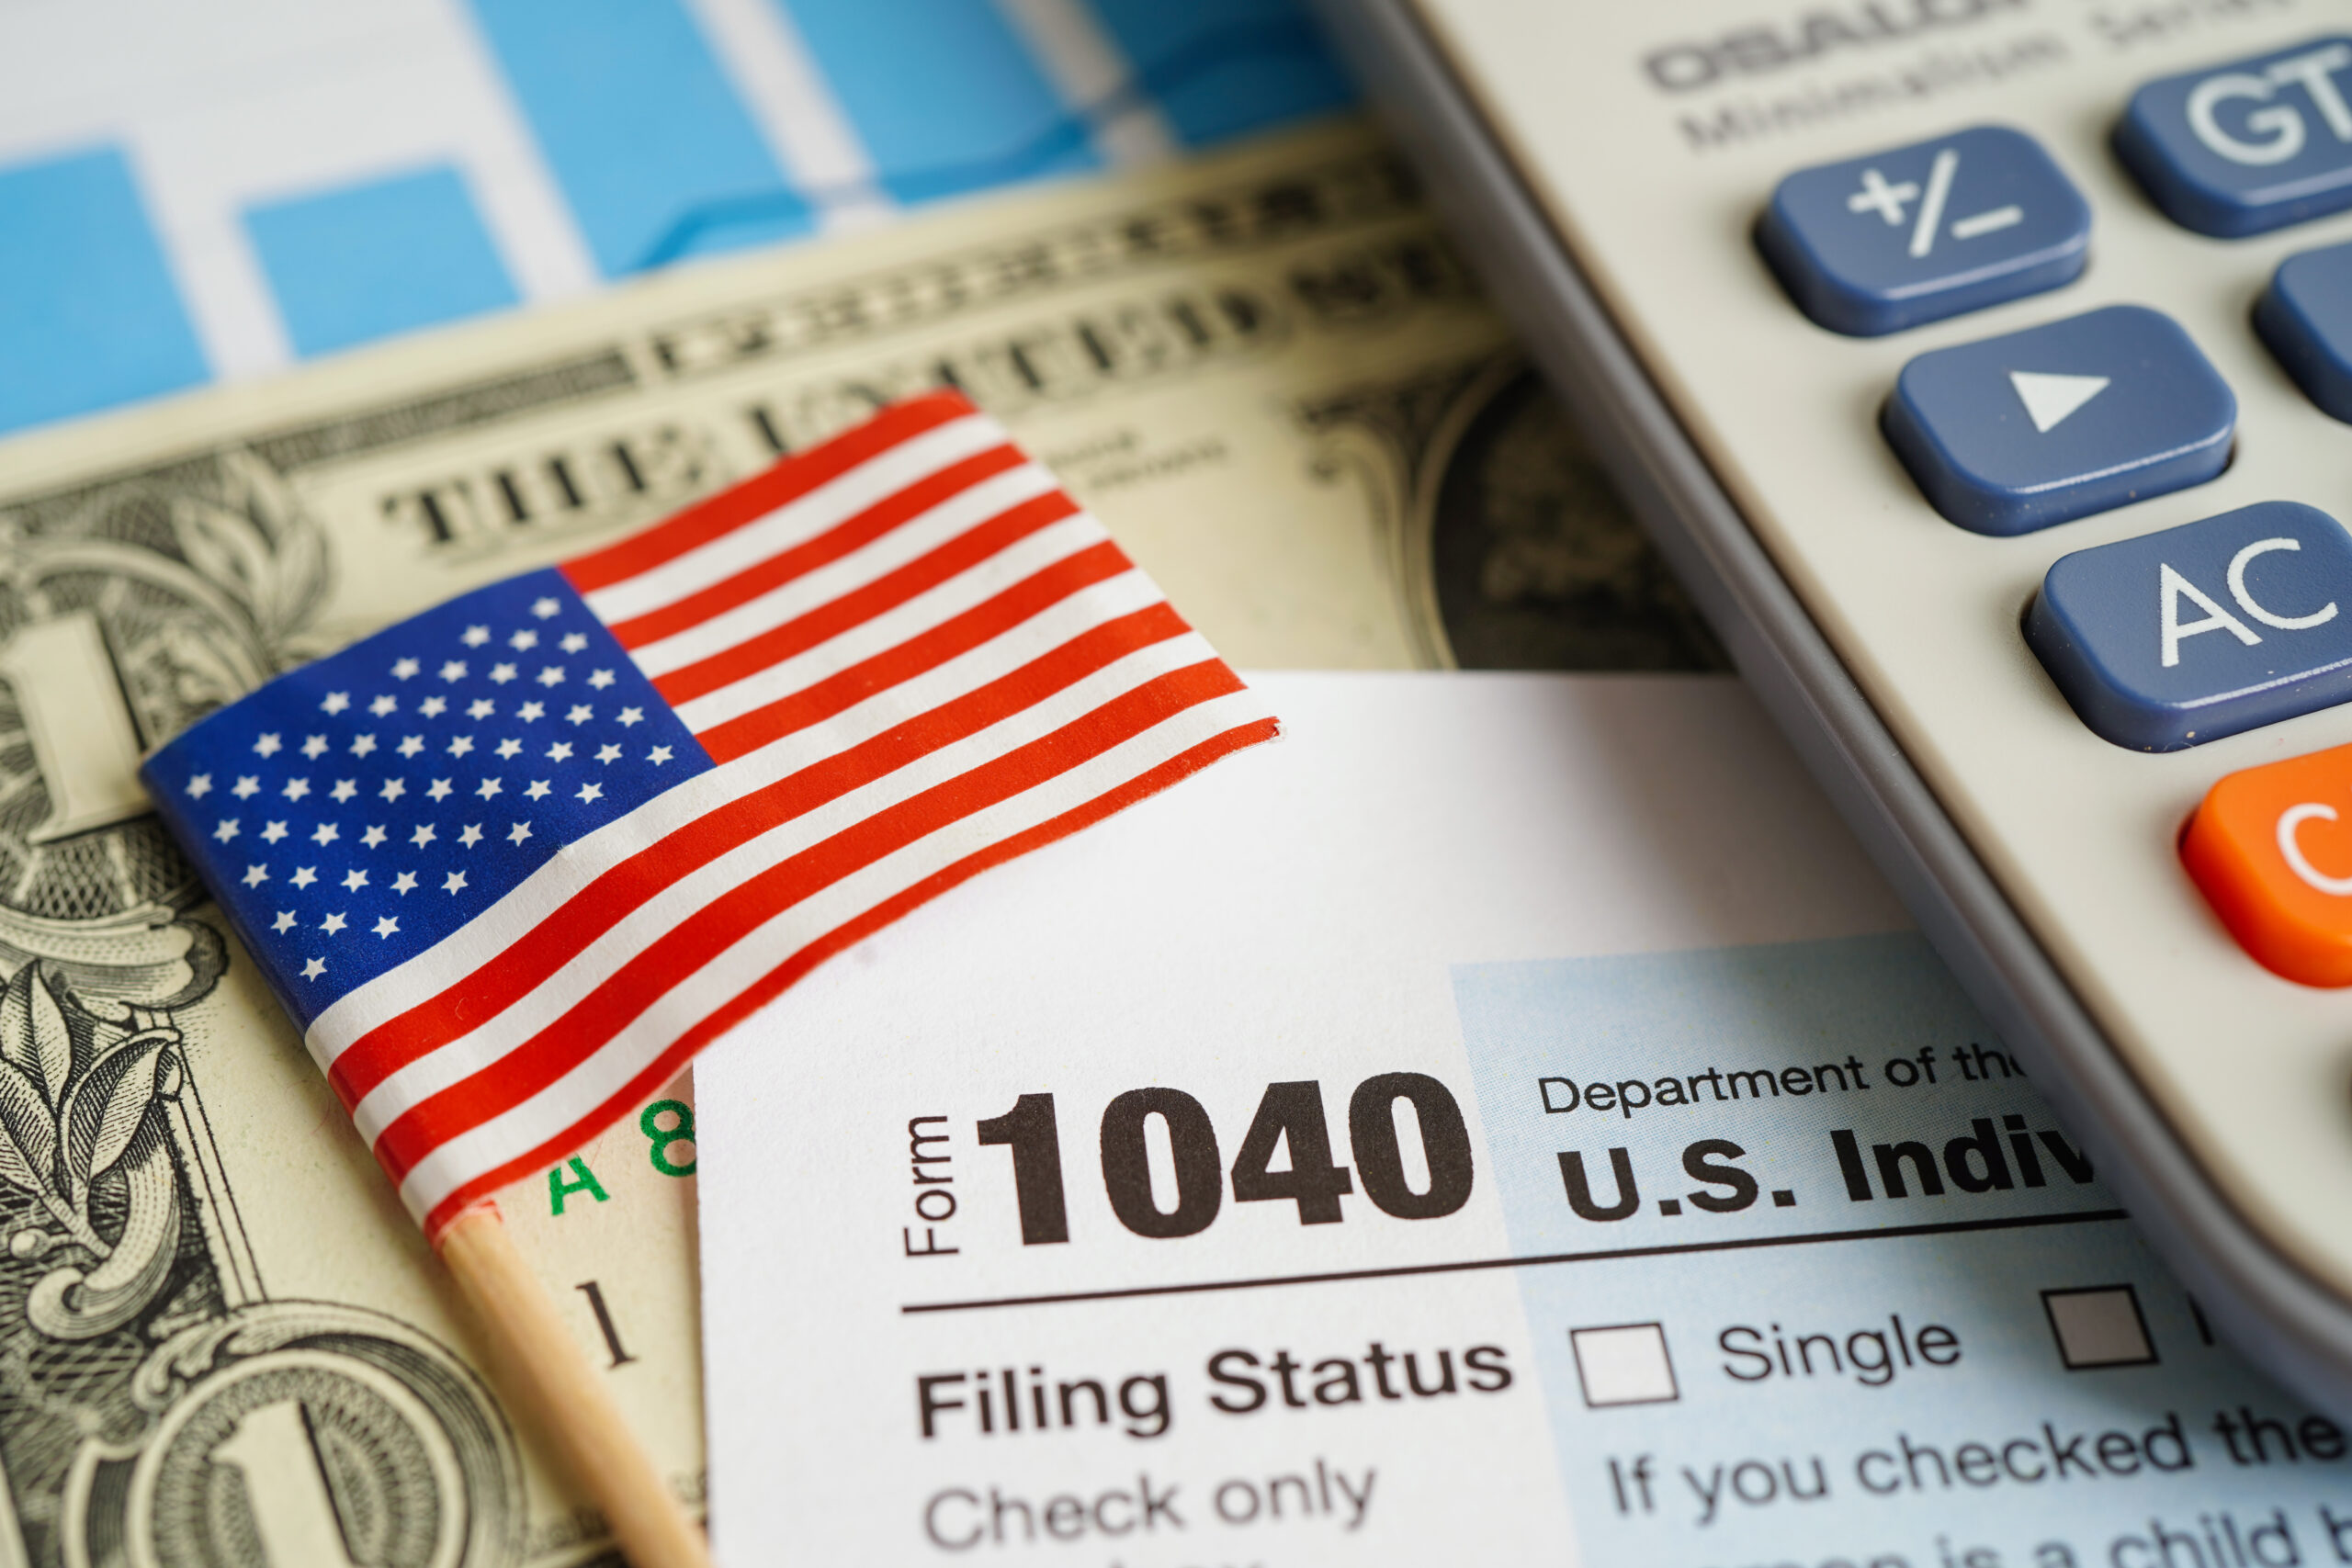 Flaga Stanów Zjednoczonych, kalkulator i banknoty, tworzące symboliczną reprezentację dochodu narodowego USA